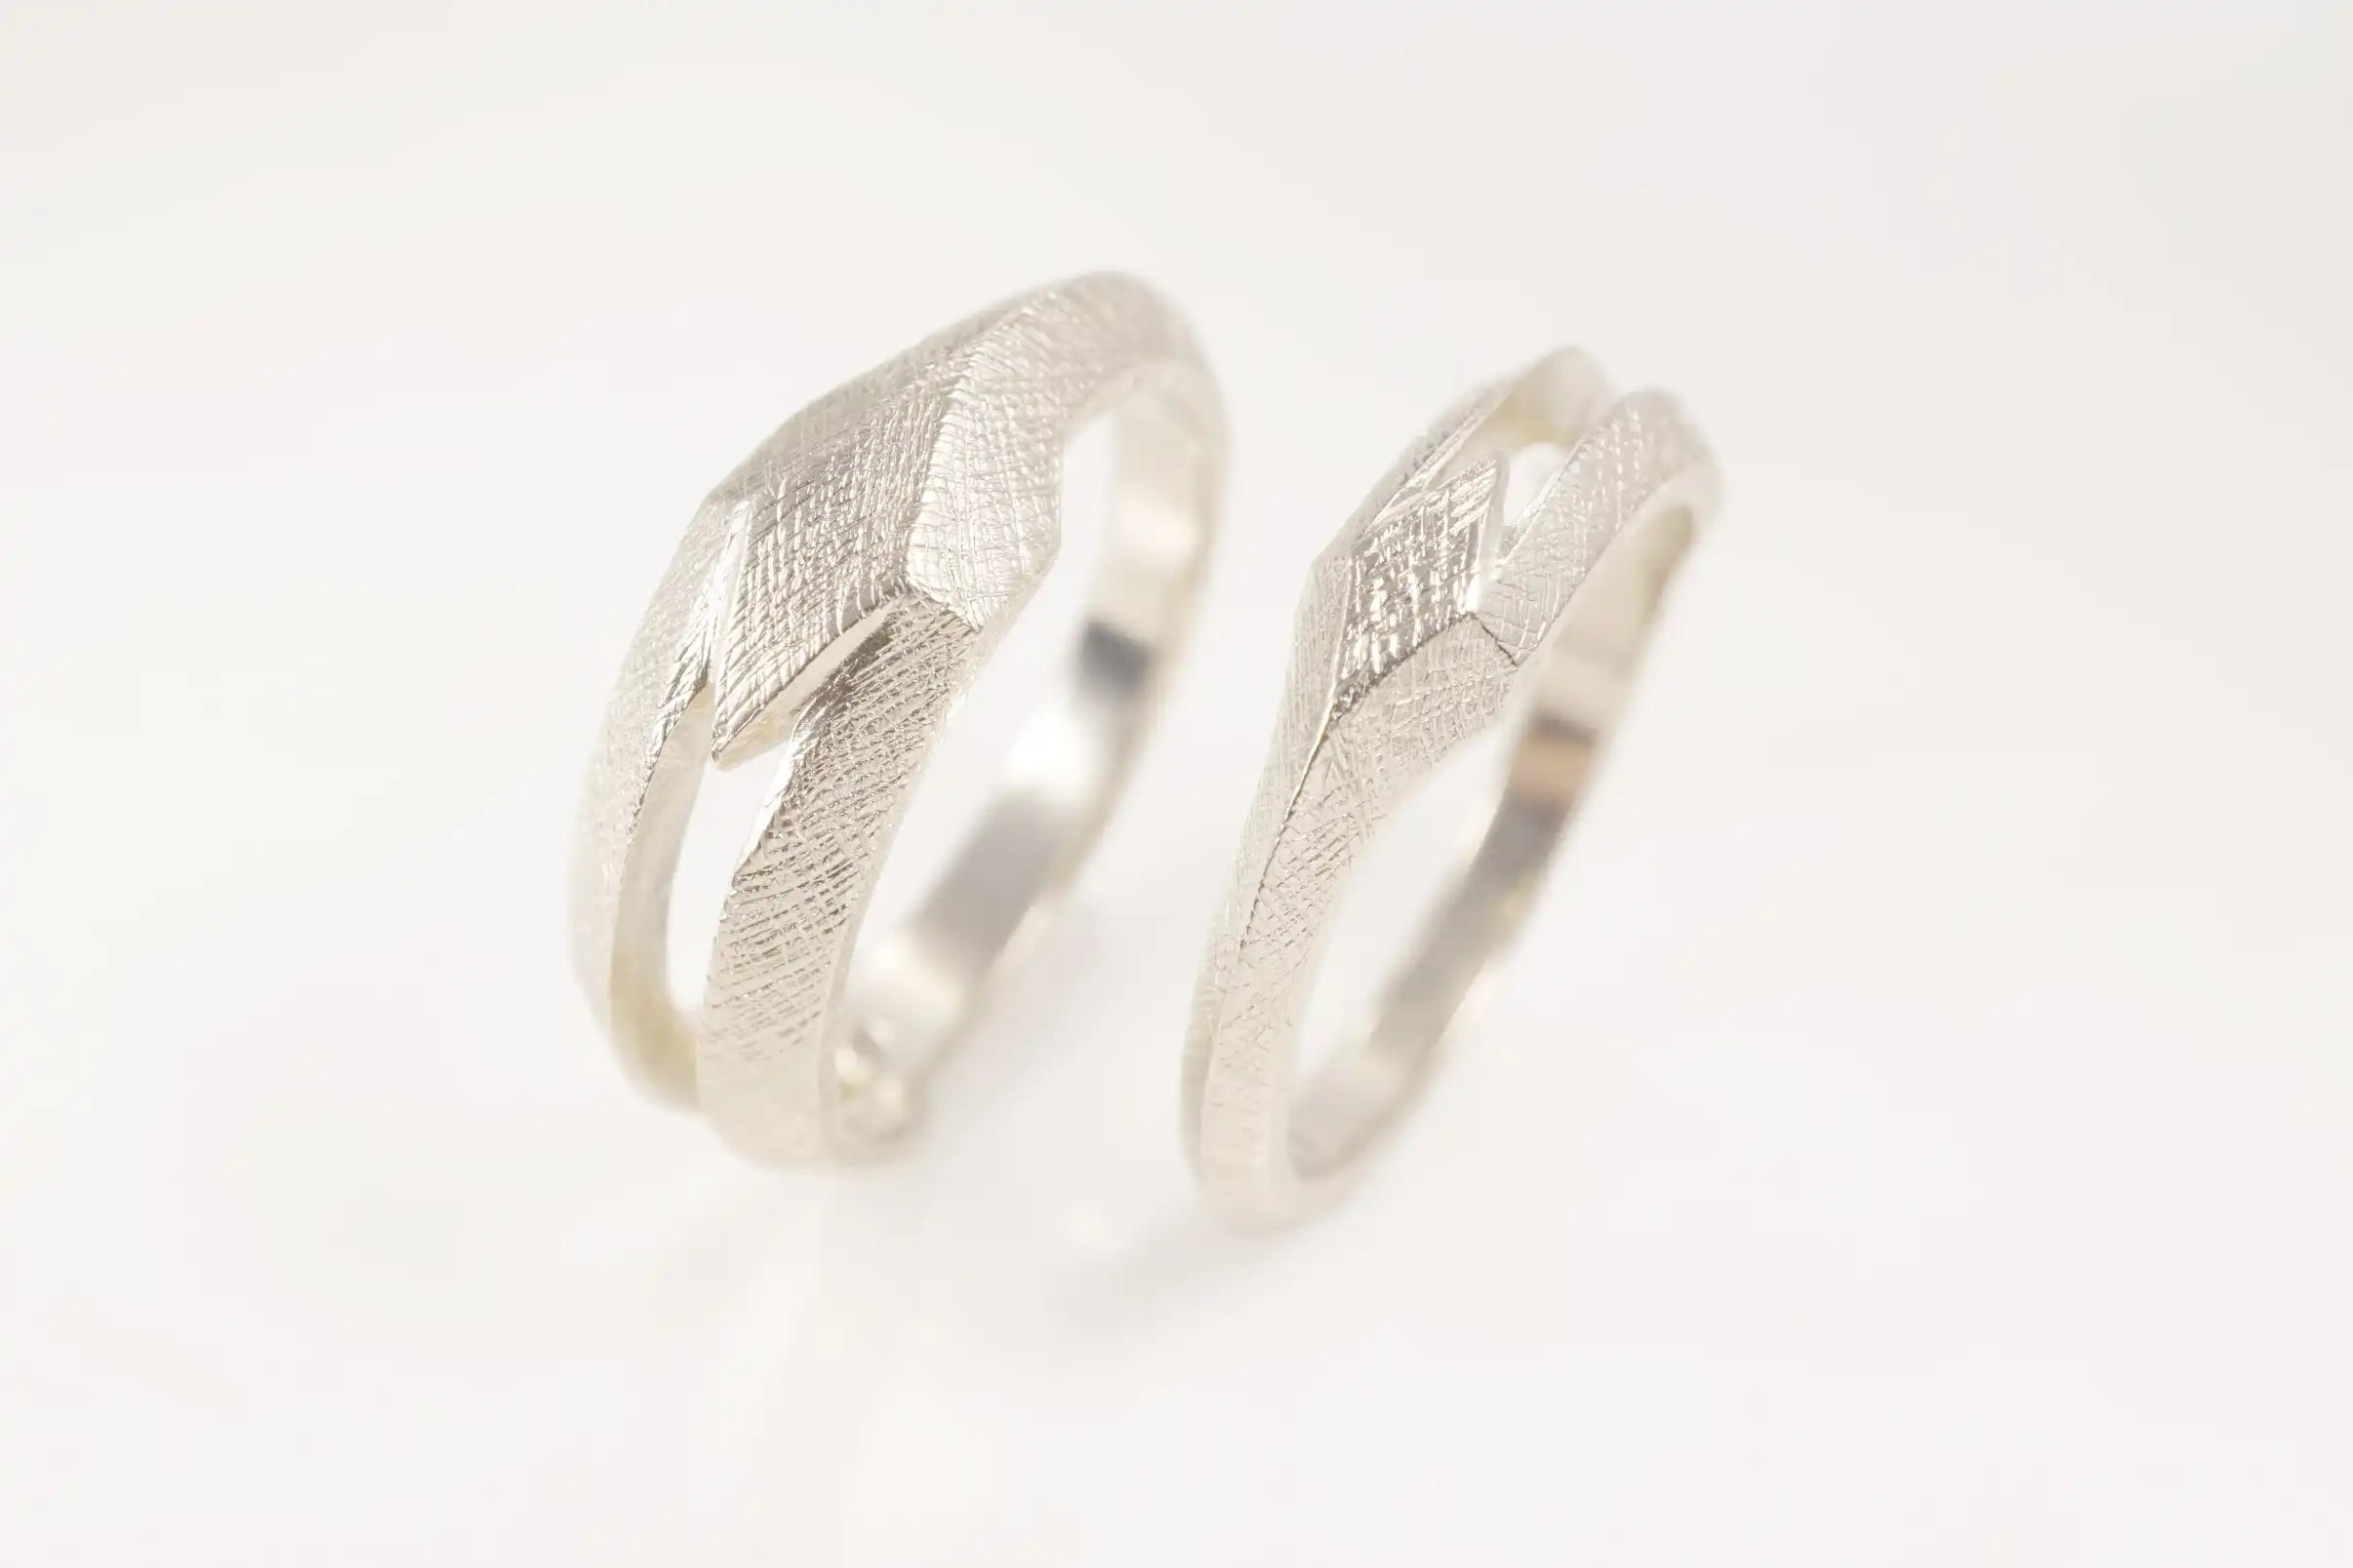 Chia Jewelry訂製k金婚戒對戒，以字母為主題的幾何簡約婚戒設計，屬於你的獨特個性婚戒